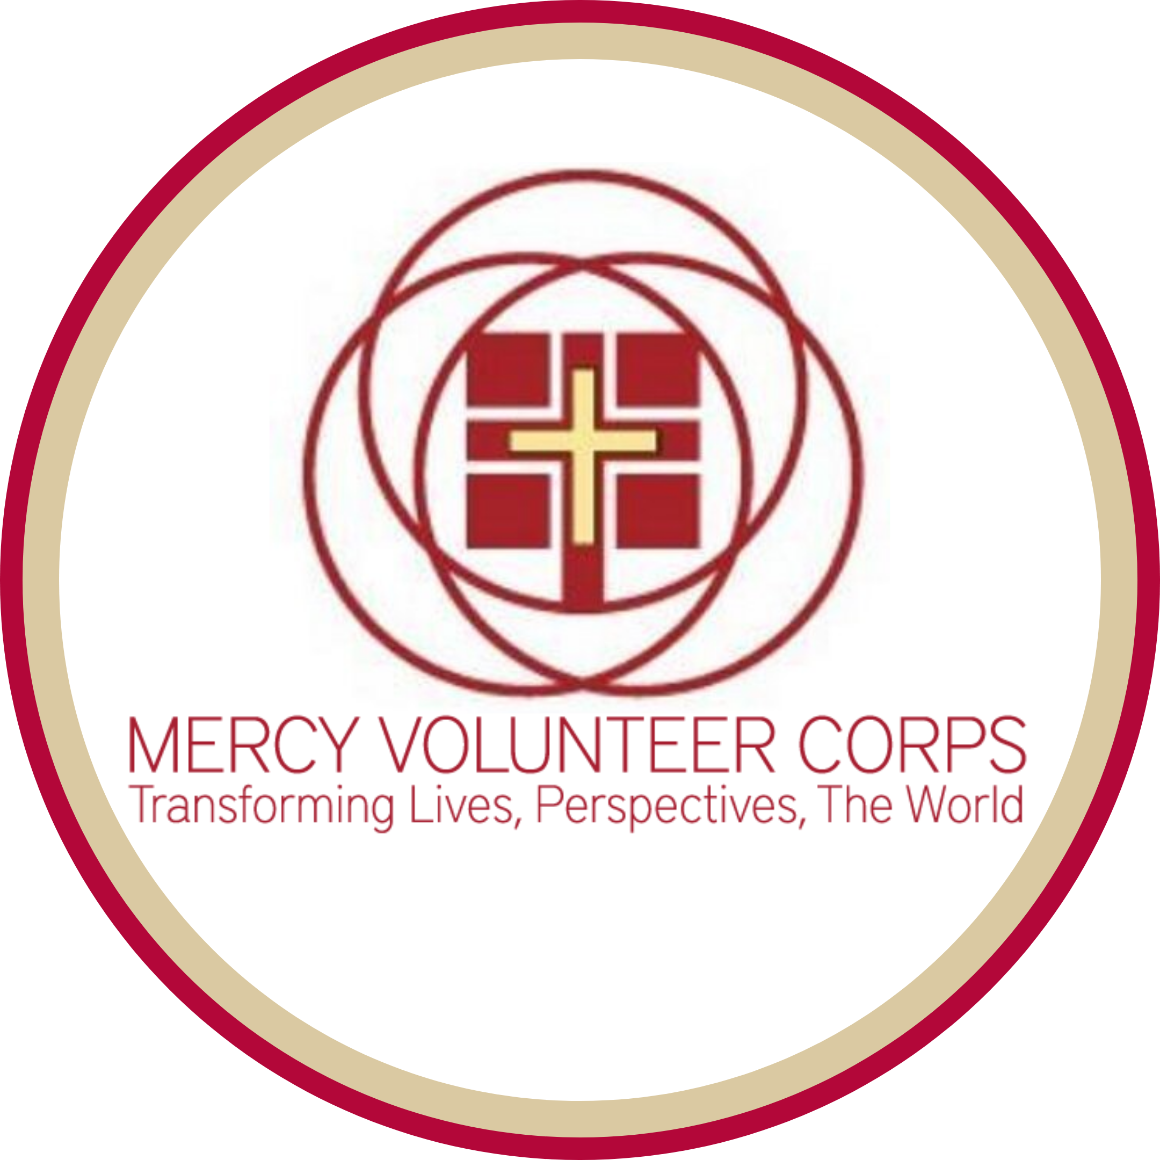 Mercy Volunteer Corps